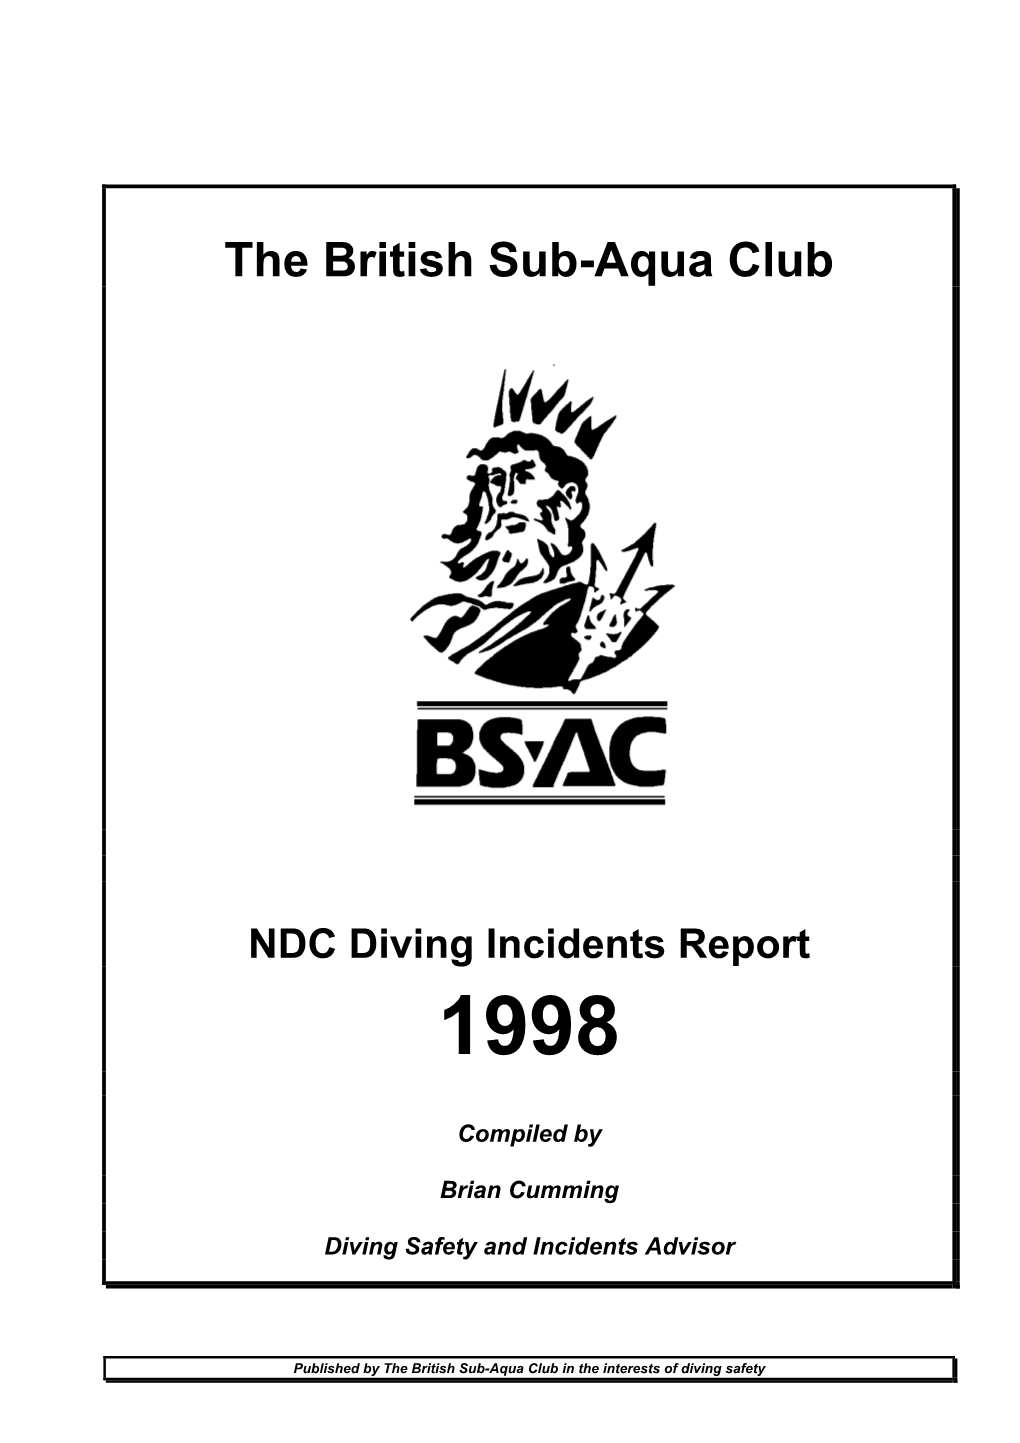 BSAC Incident Report 1998